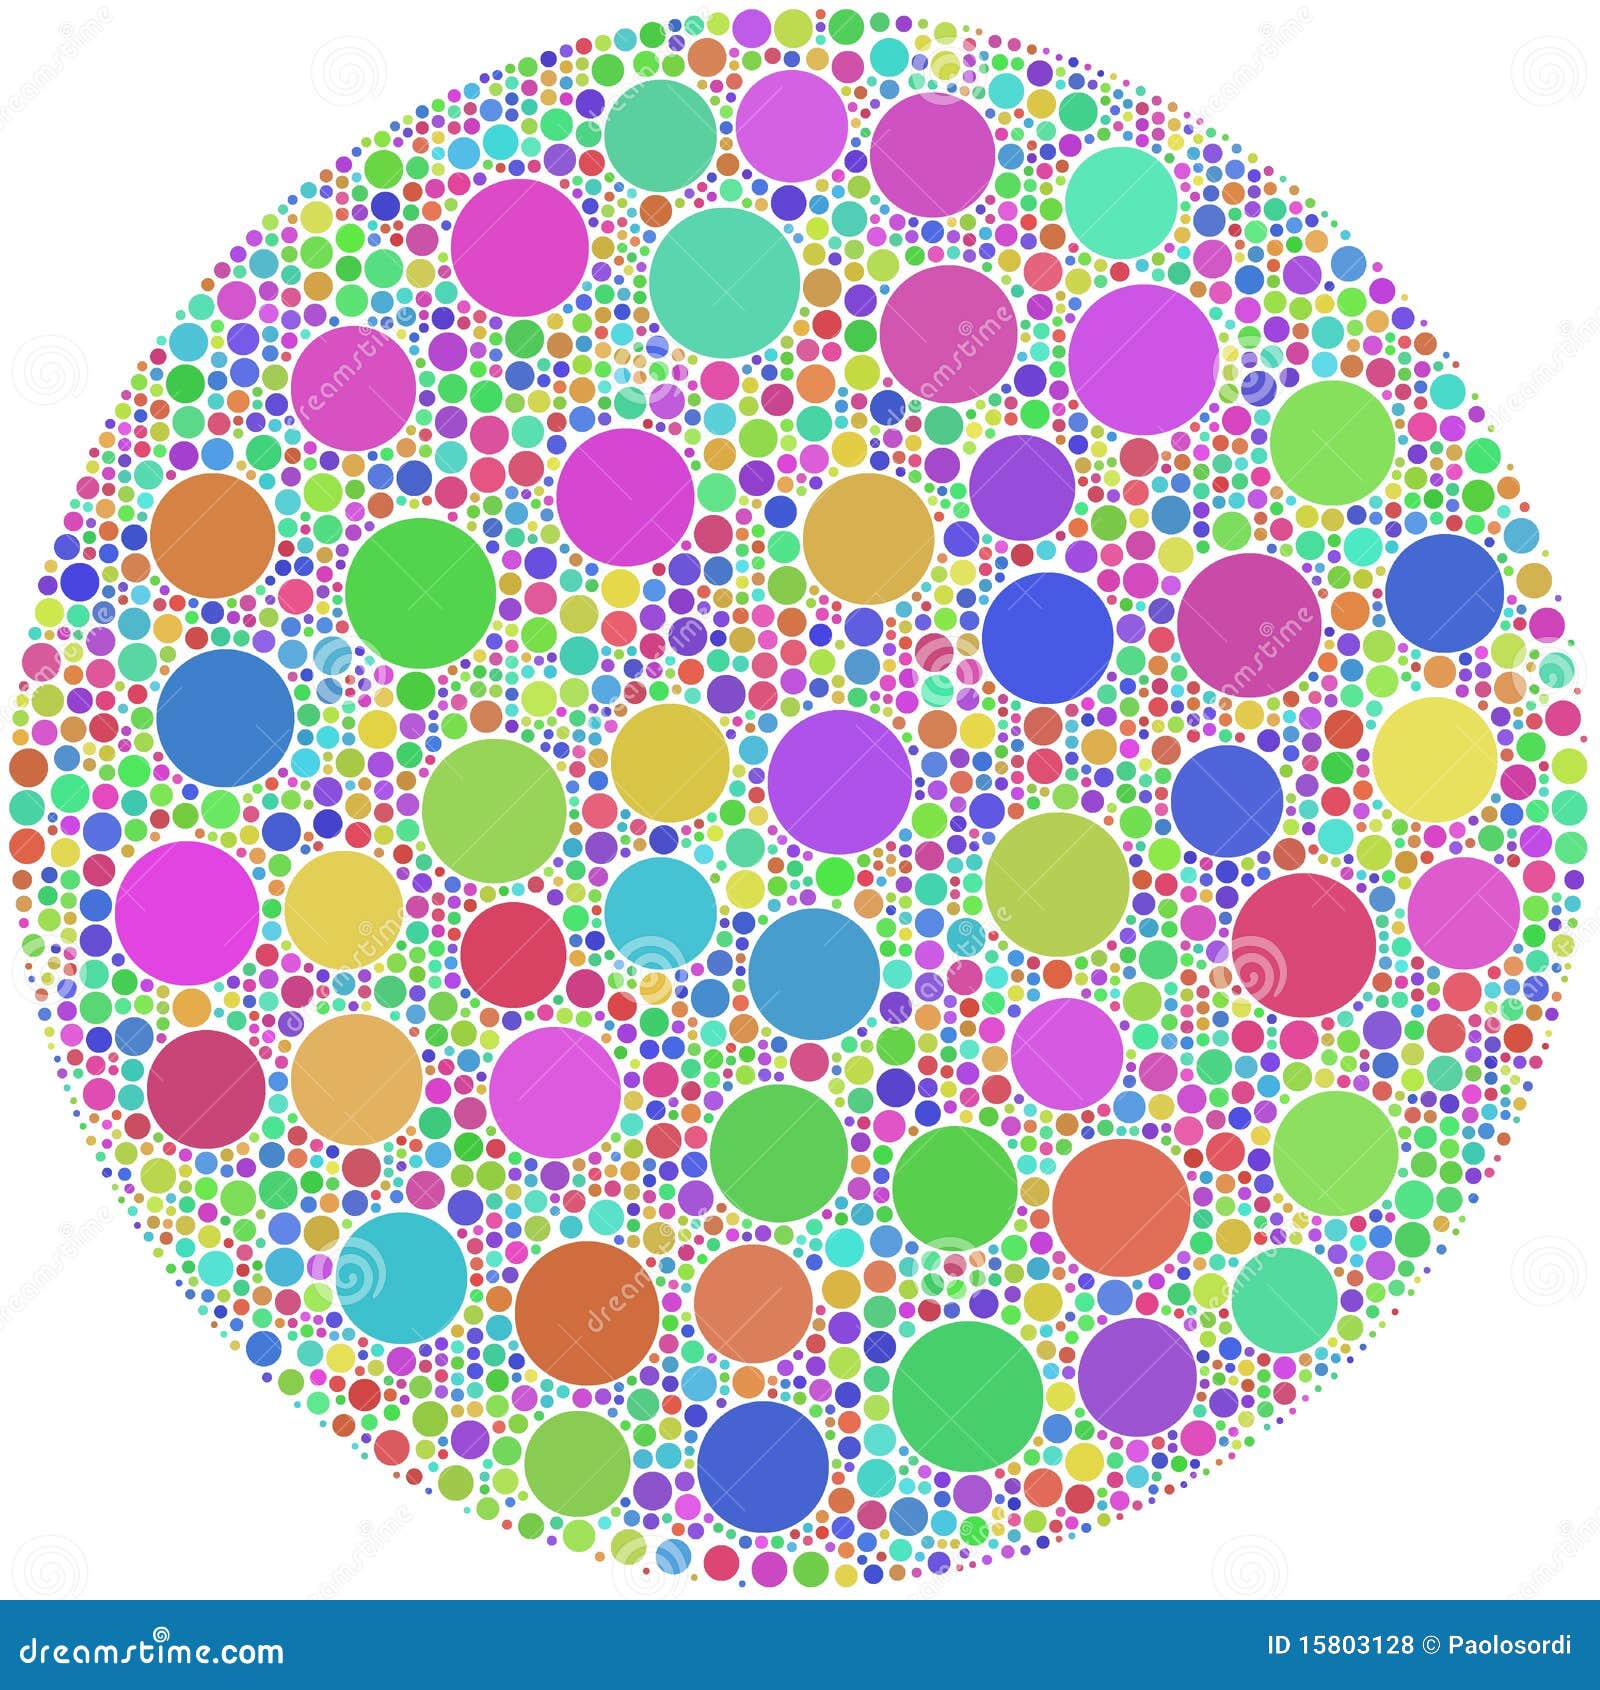 Круги едят других кругов. Круг с кругами внутри. Кружочки с кружочками внутри. Кружочки цветные с узорами внутри. Множество кружков.